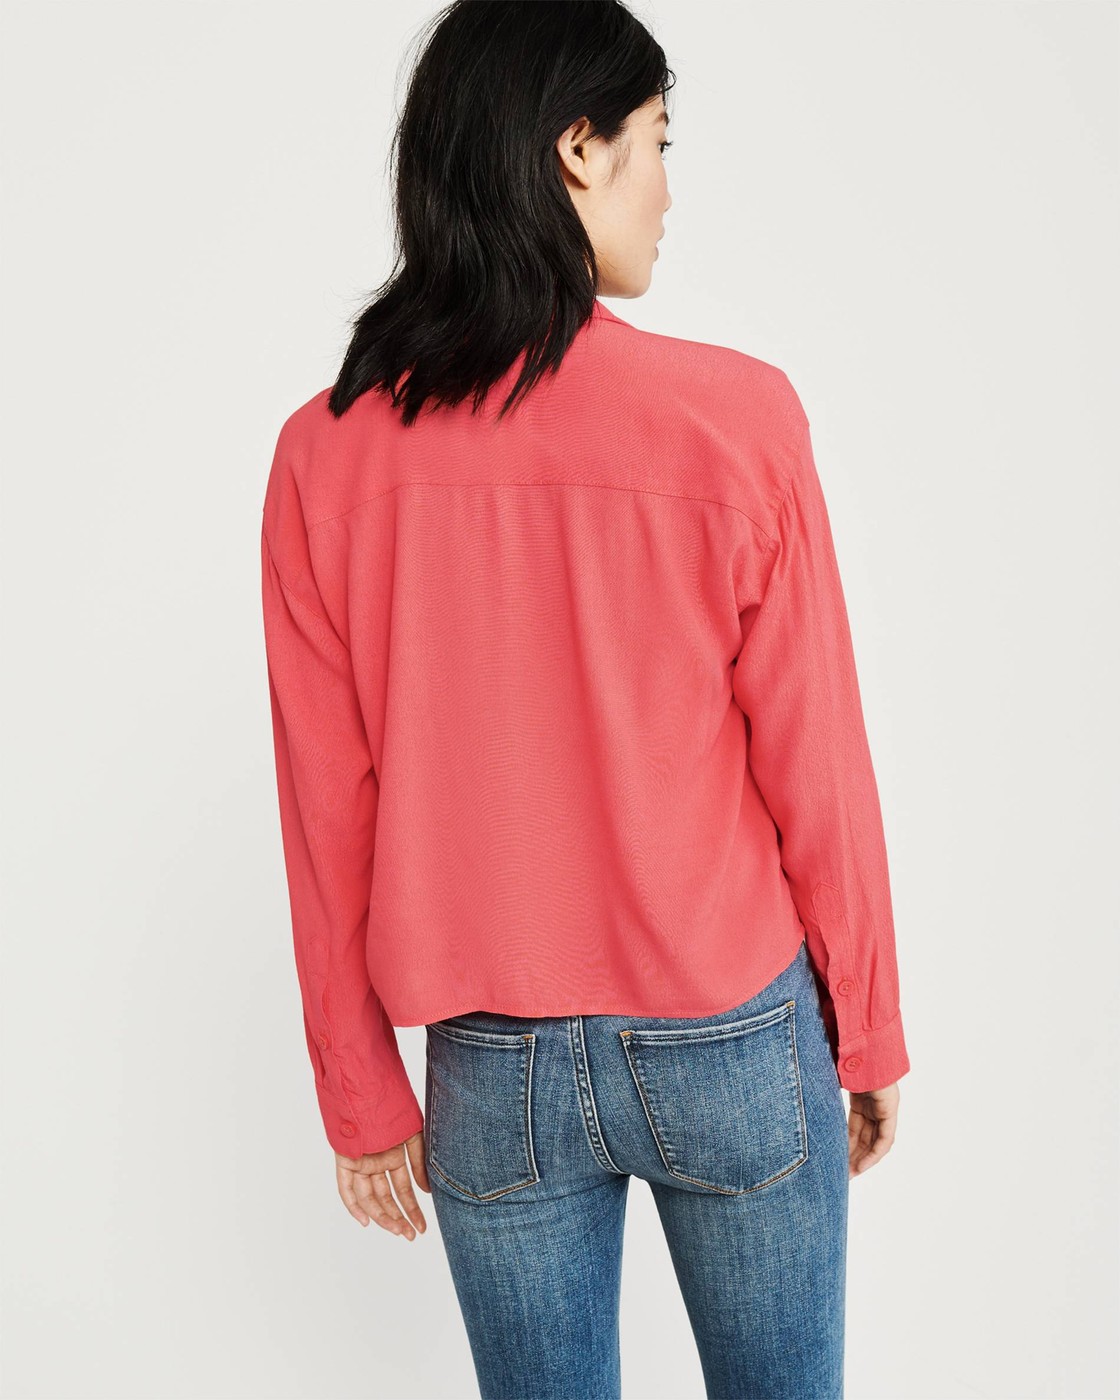 Женская рубашка - рубашка Abercrombie & Fitch, S, S